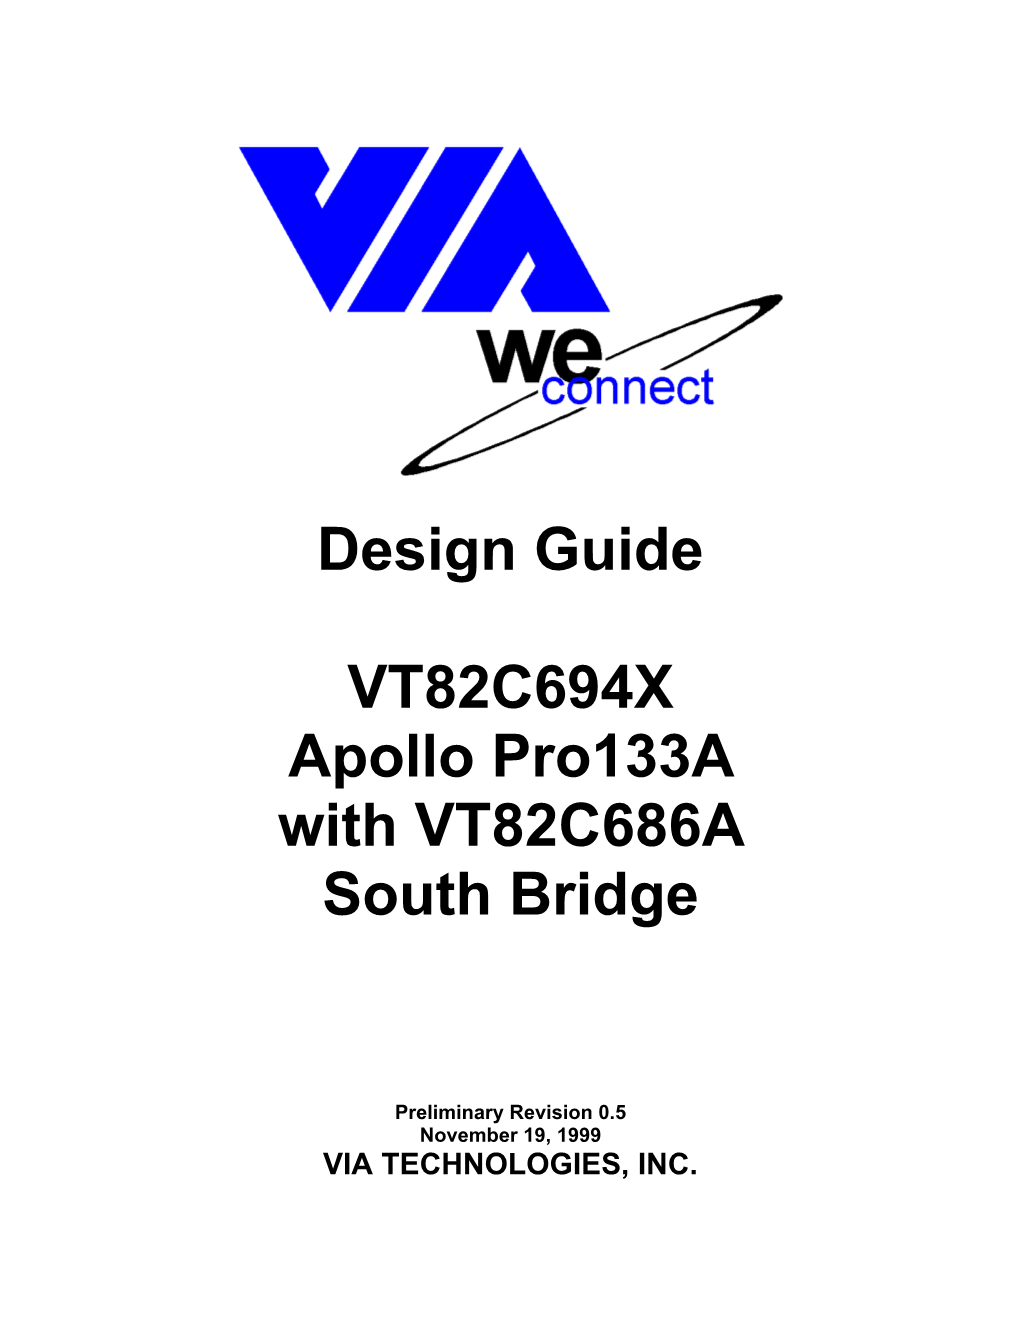 Design Guide VT82C694X Apollo Pro133a with VT82C686A South Bridge